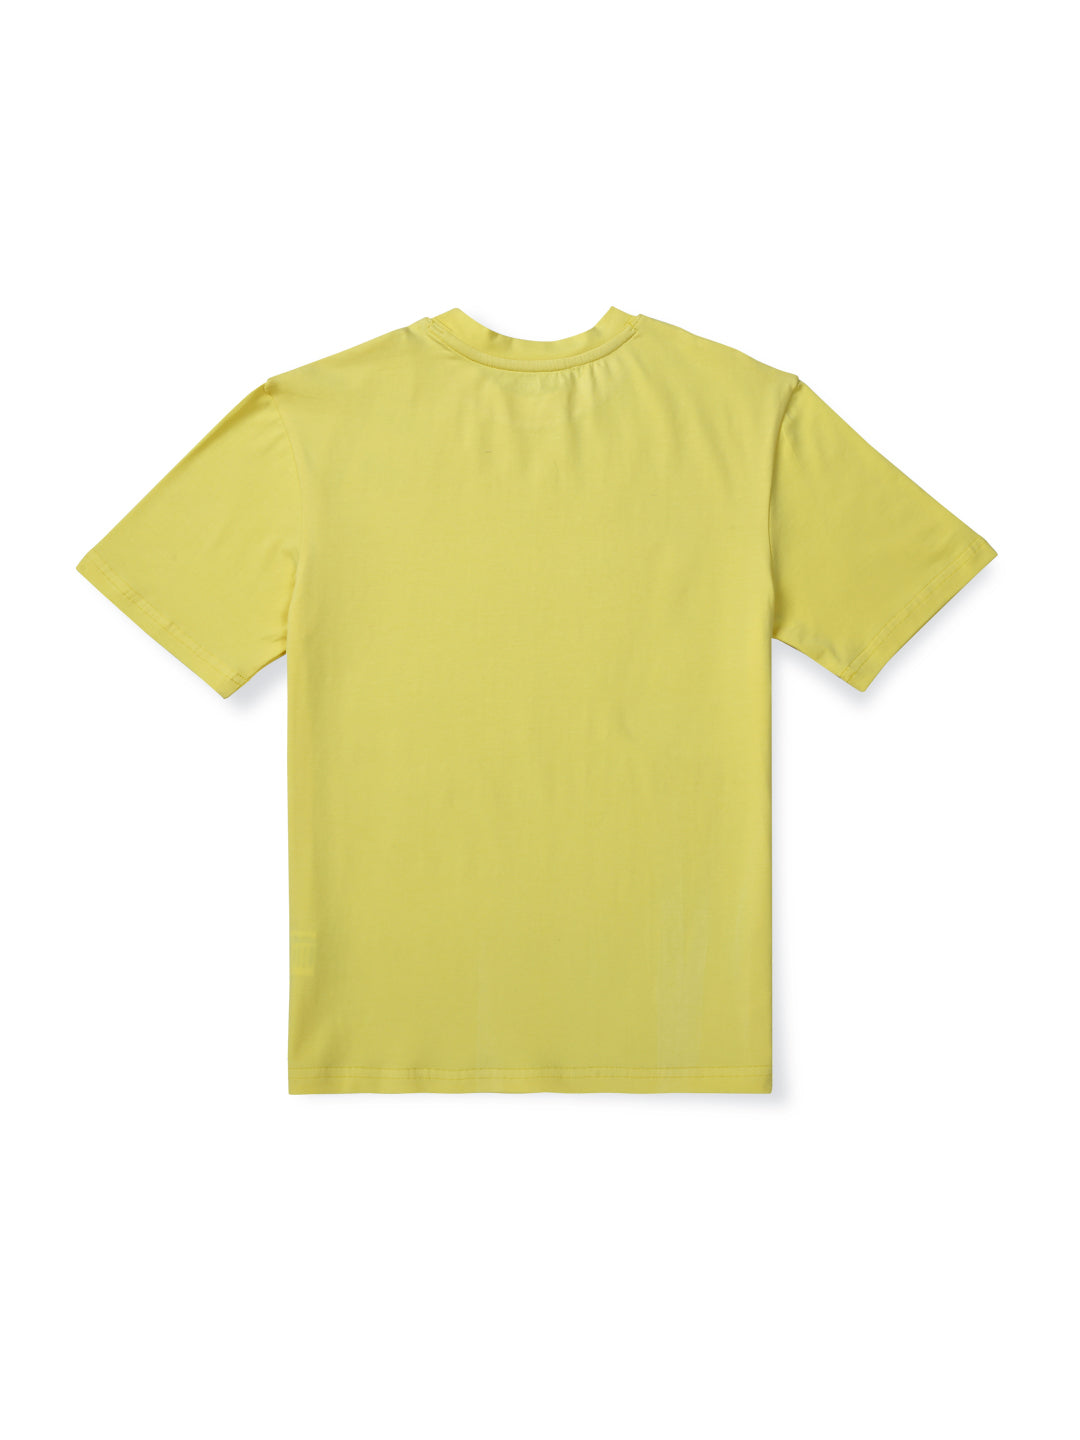 Boys Lemon Cotton Solid T-Shirt